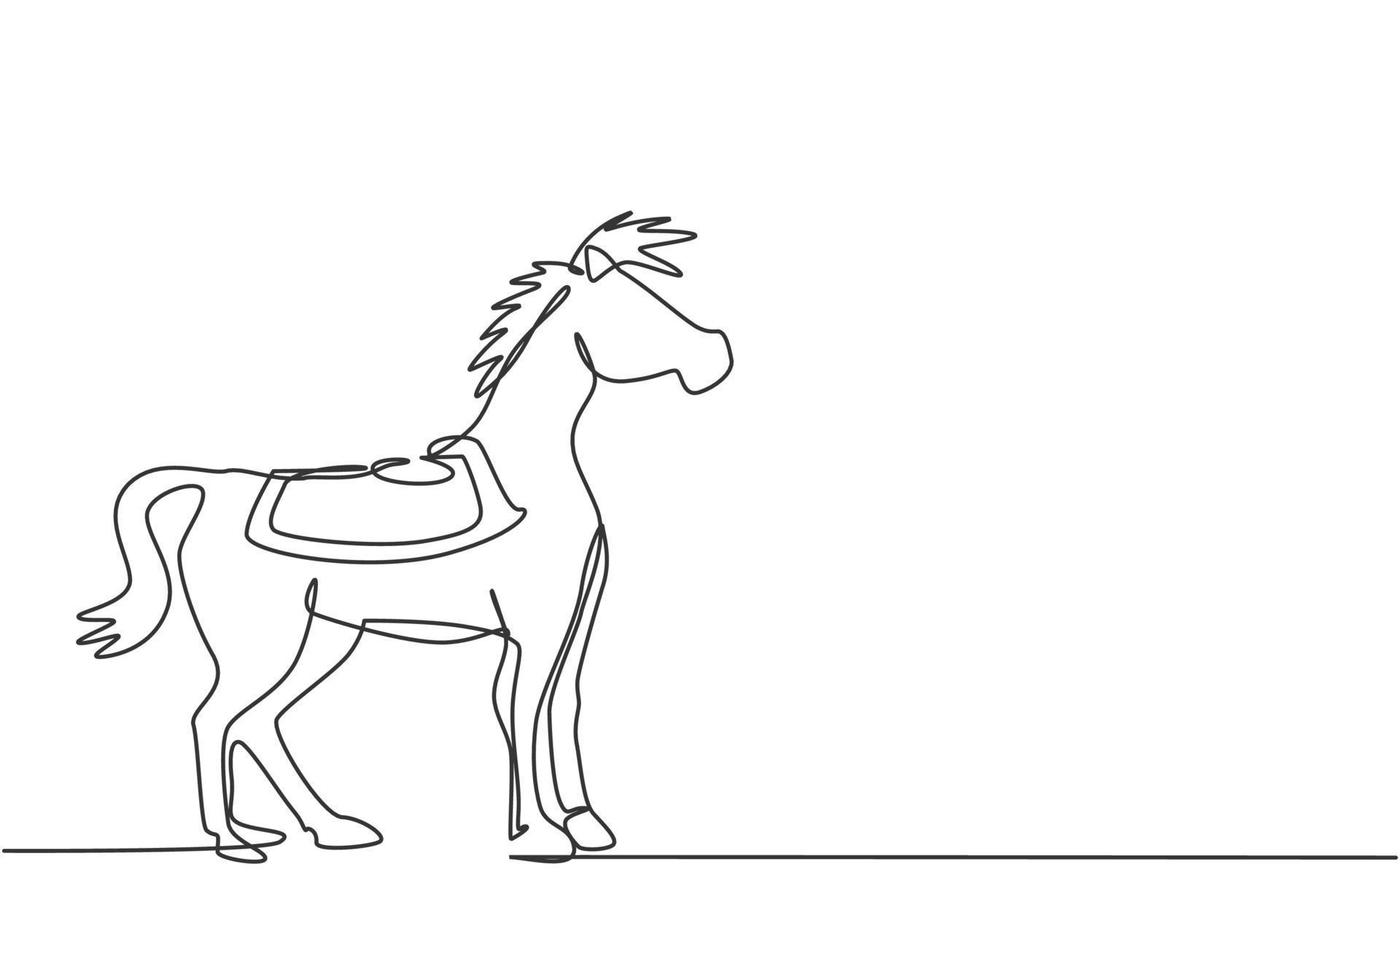 Una sola línea continua dibujando un caballo de circo parado en la arena del espectáculo, mirando hacia adelante y preparándose para realizar una atracción. caballo altamente calificado. Ilustración de vector de diseño gráfico de dibujo de una línea